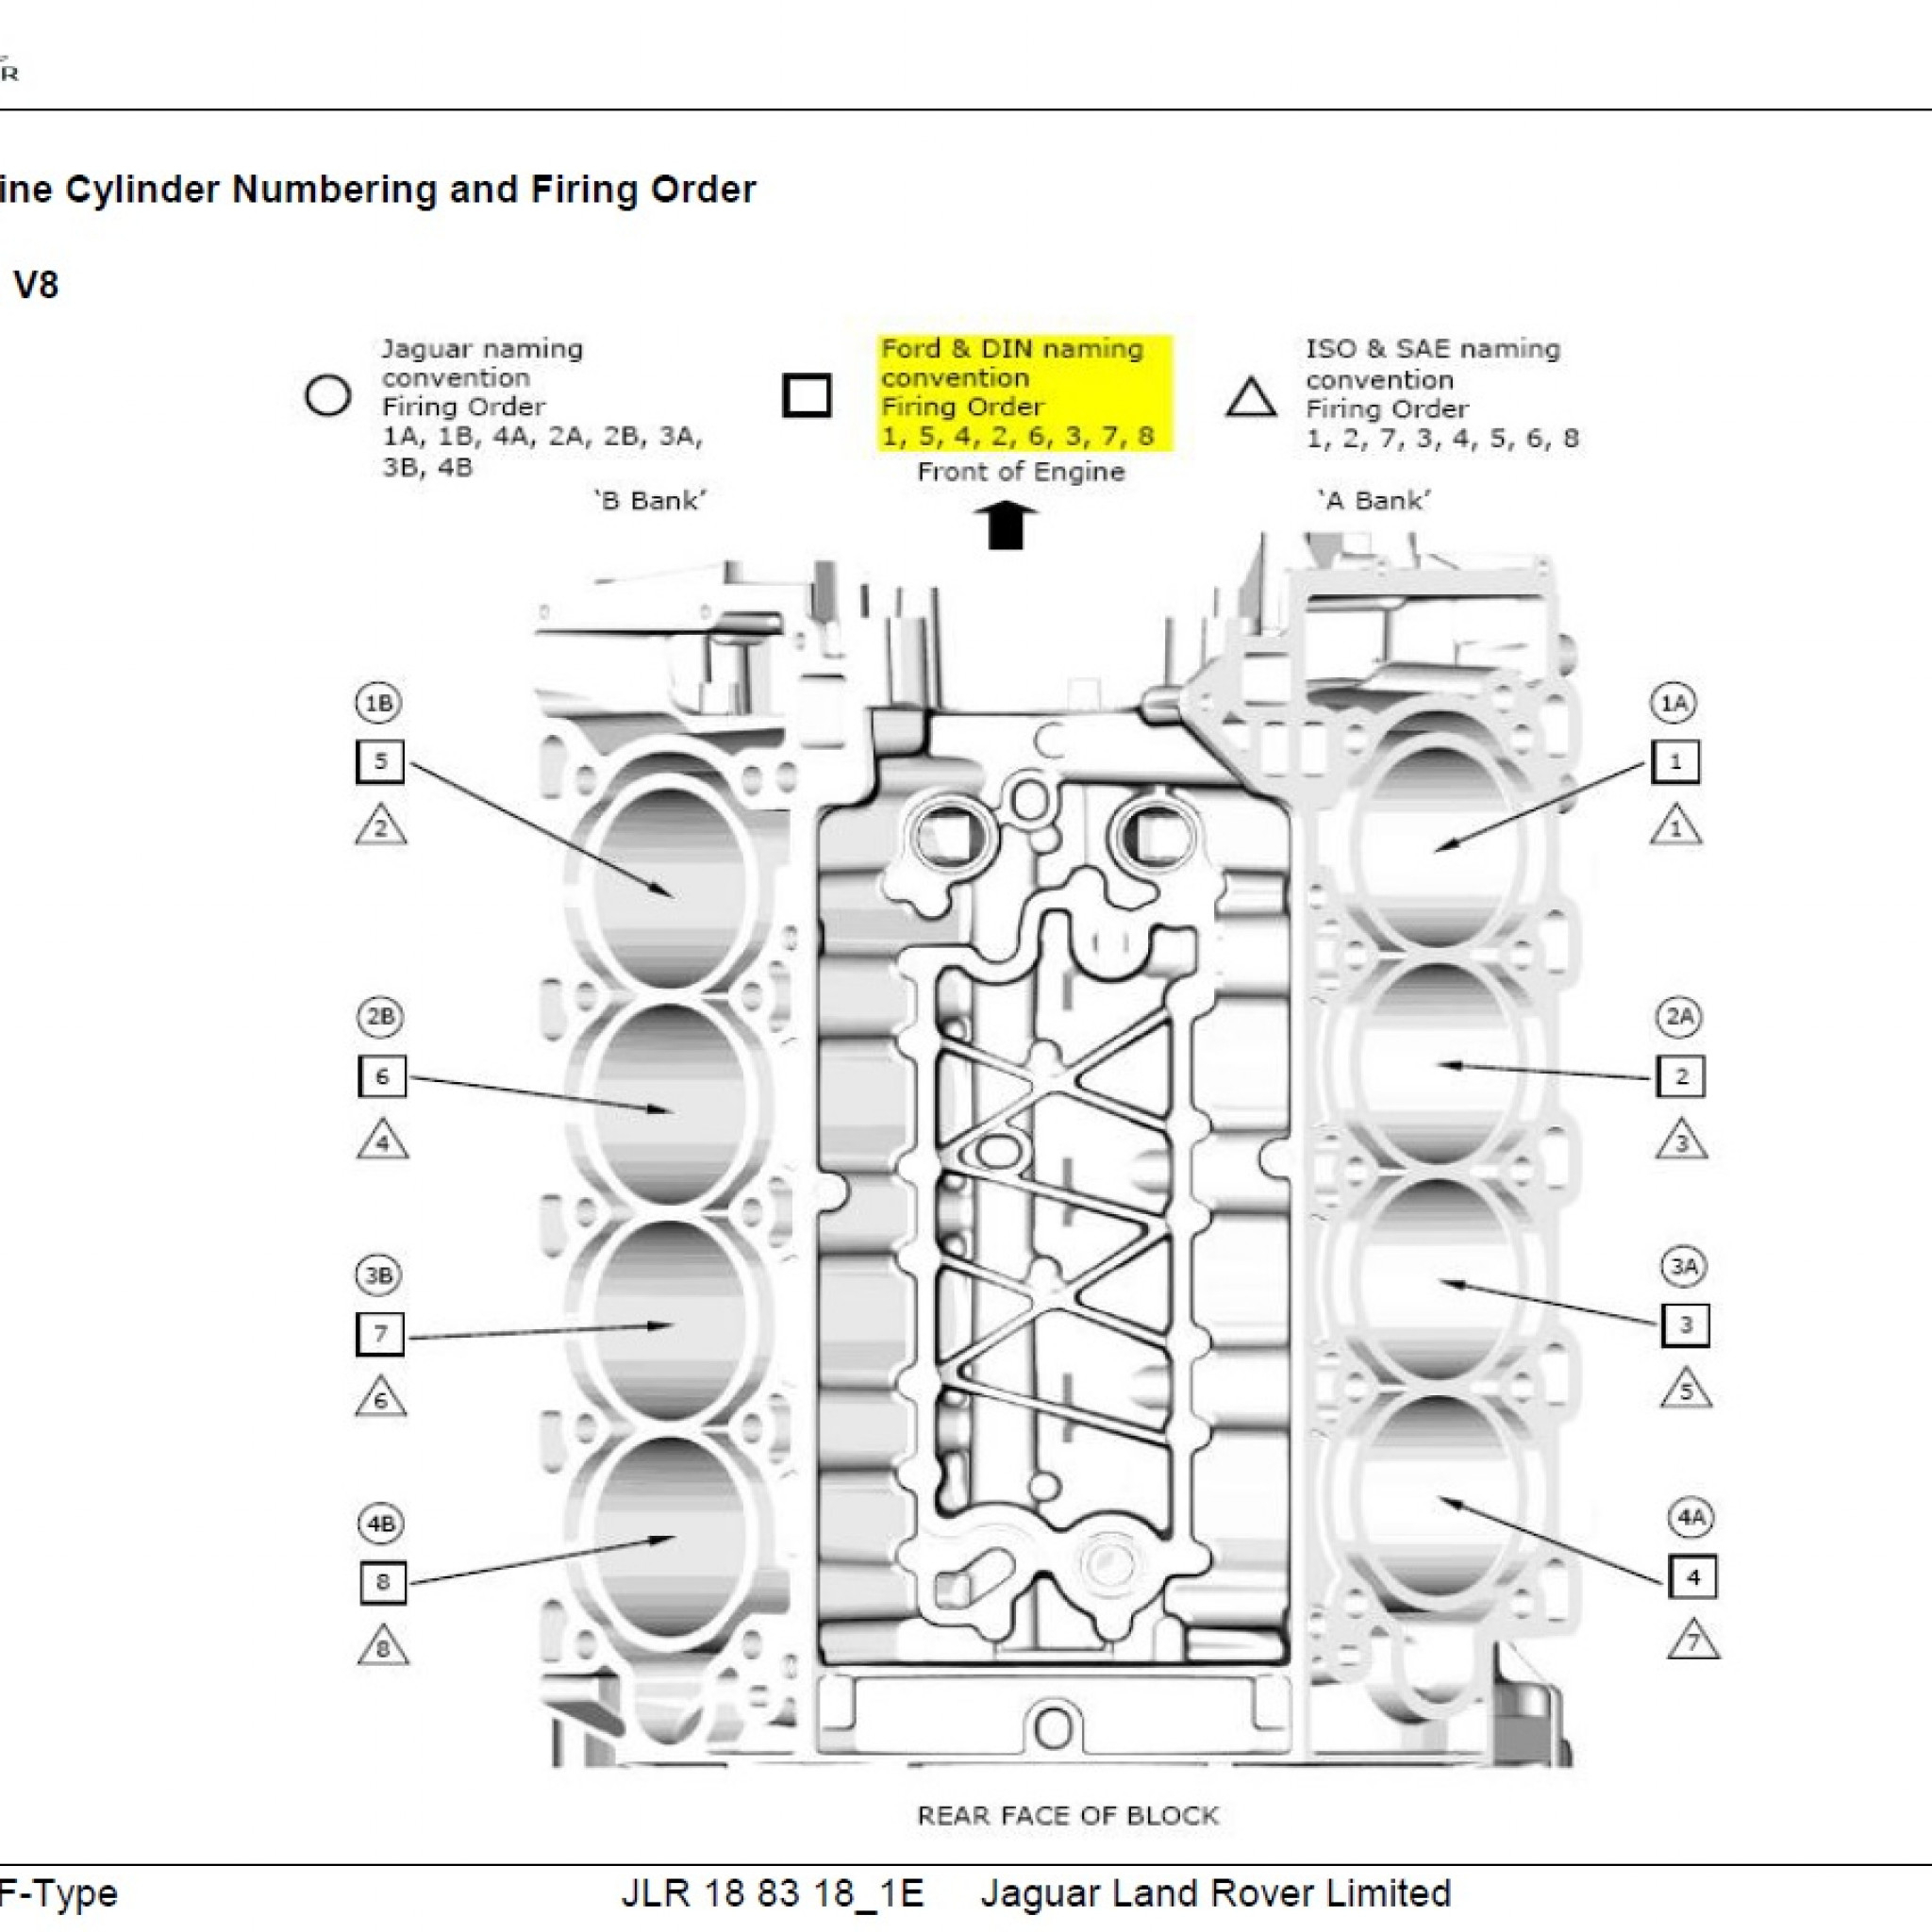 Firing Order For A Straight 6 300 Ford Engine 1986 EngineFiringOrder